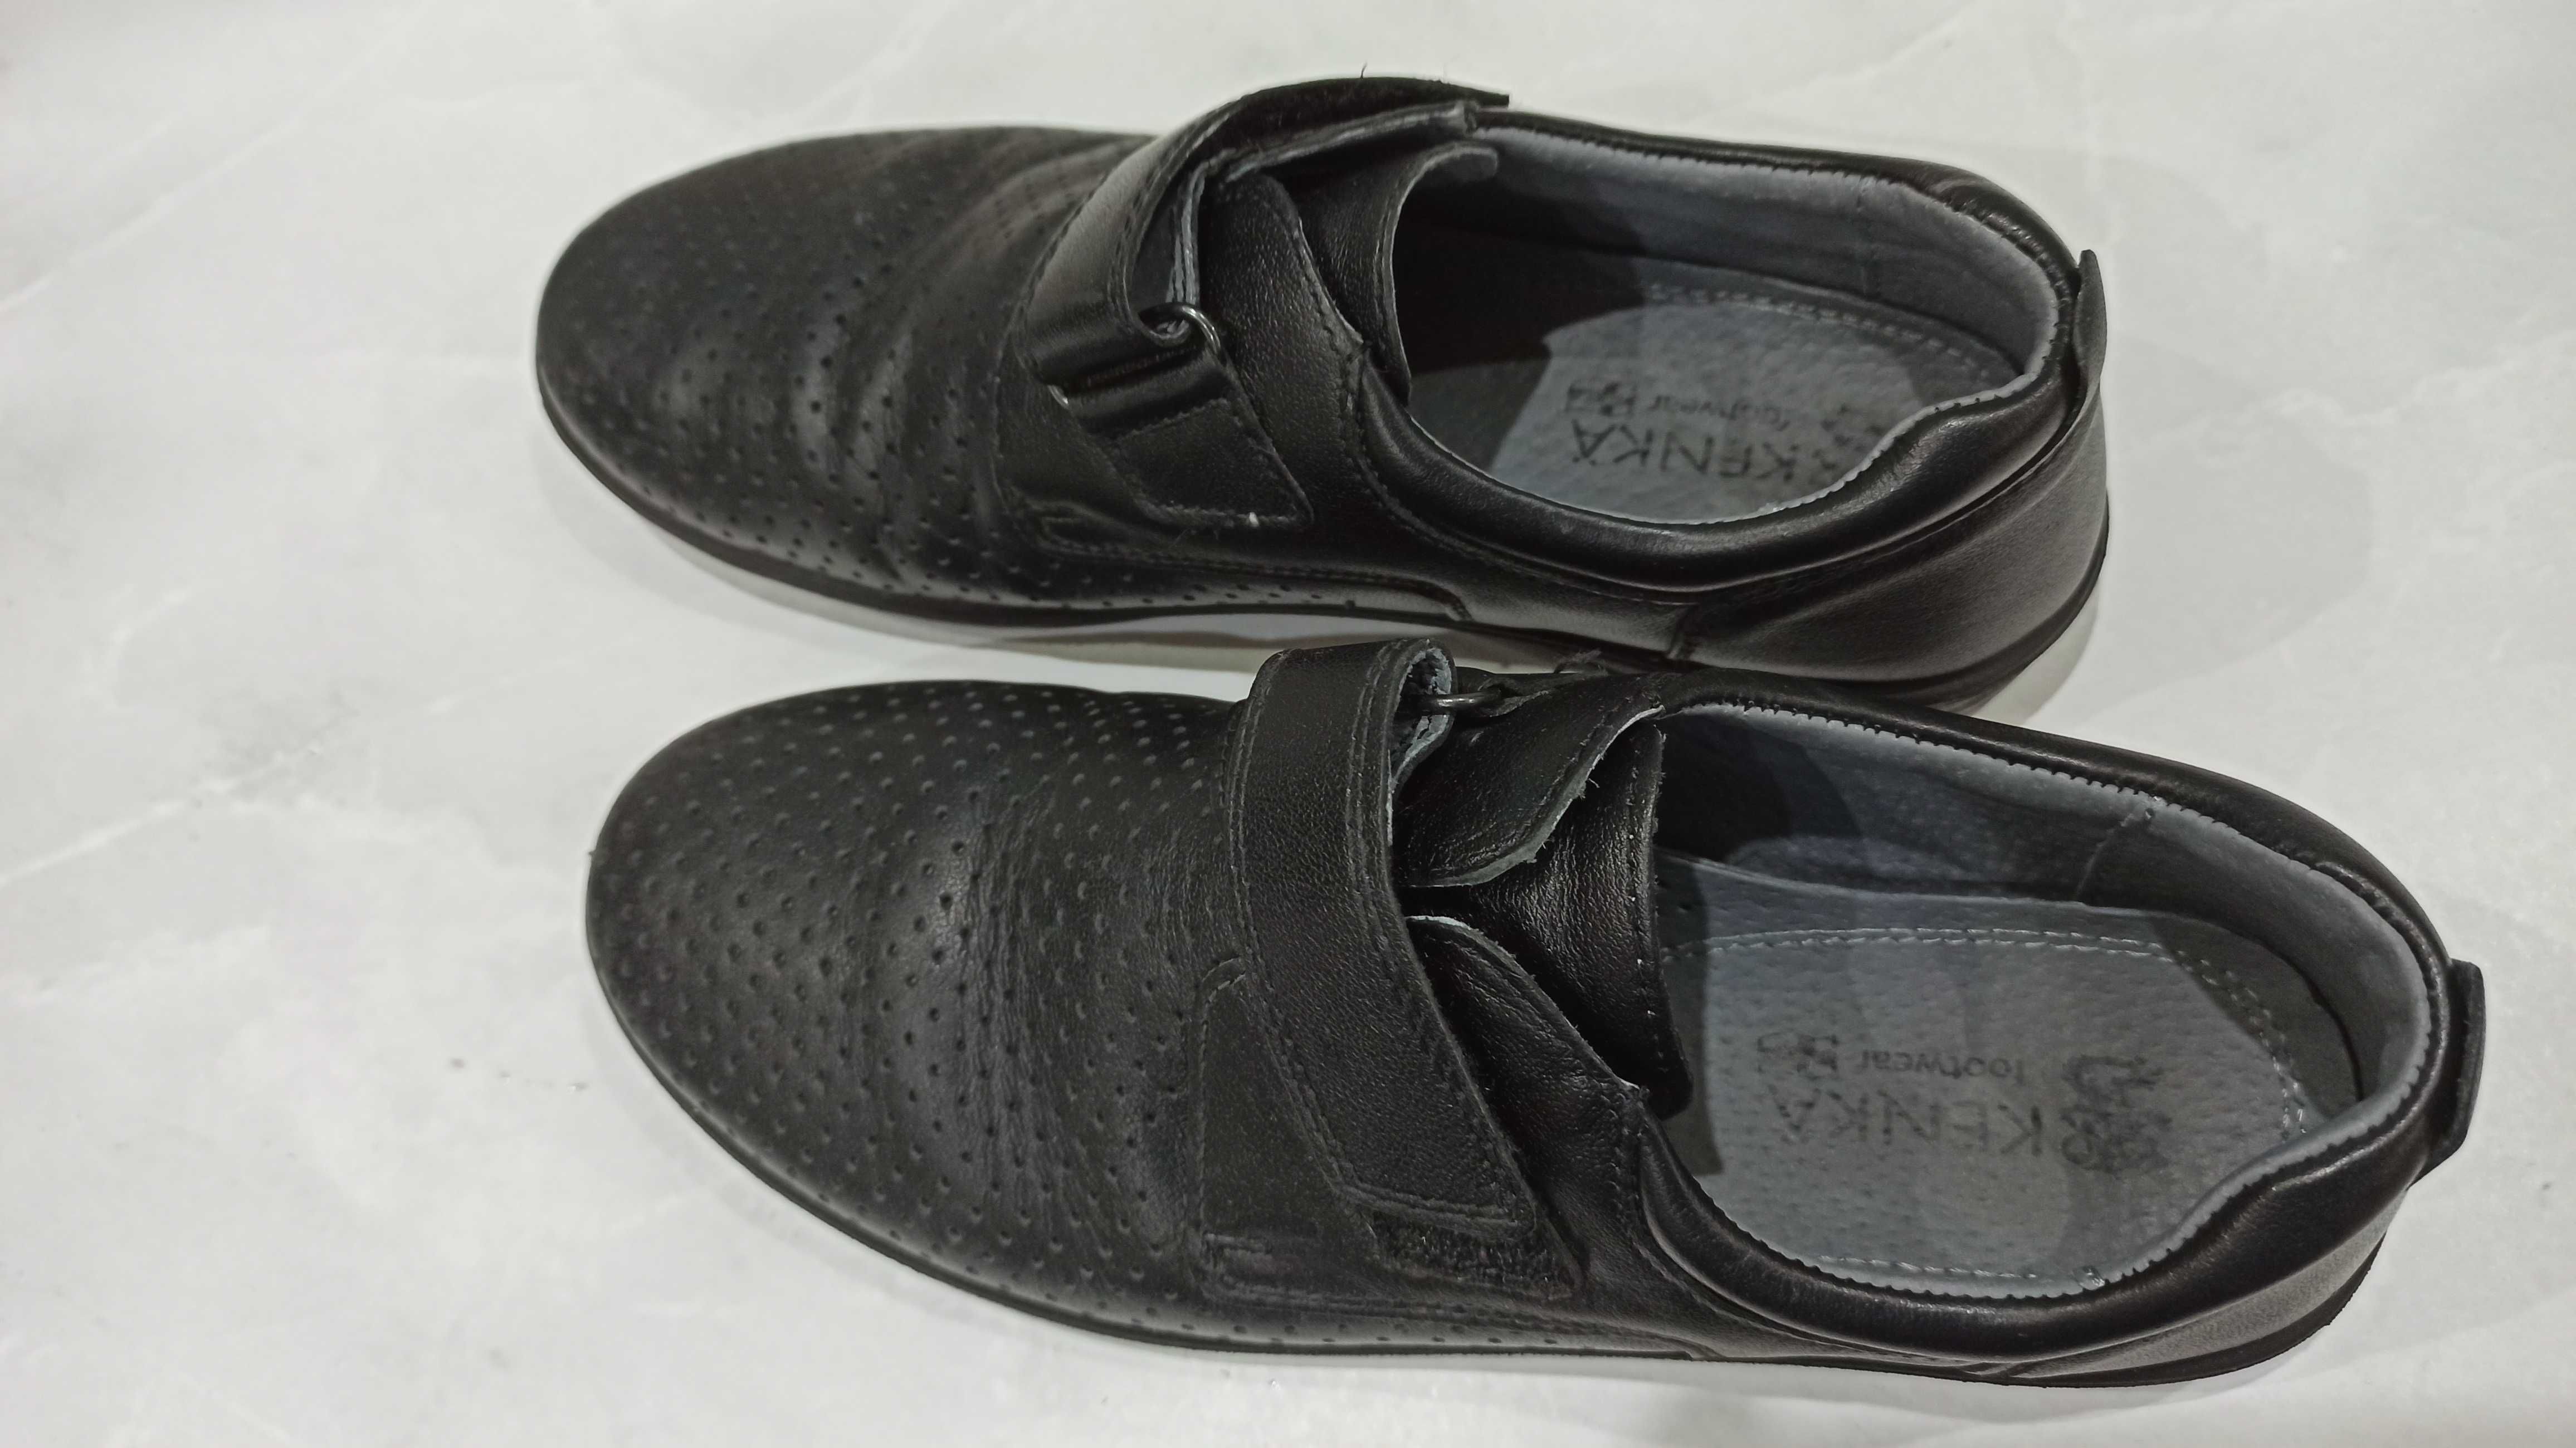 Подростковые школьные туфли черные, натуральная кожа, 37 размер